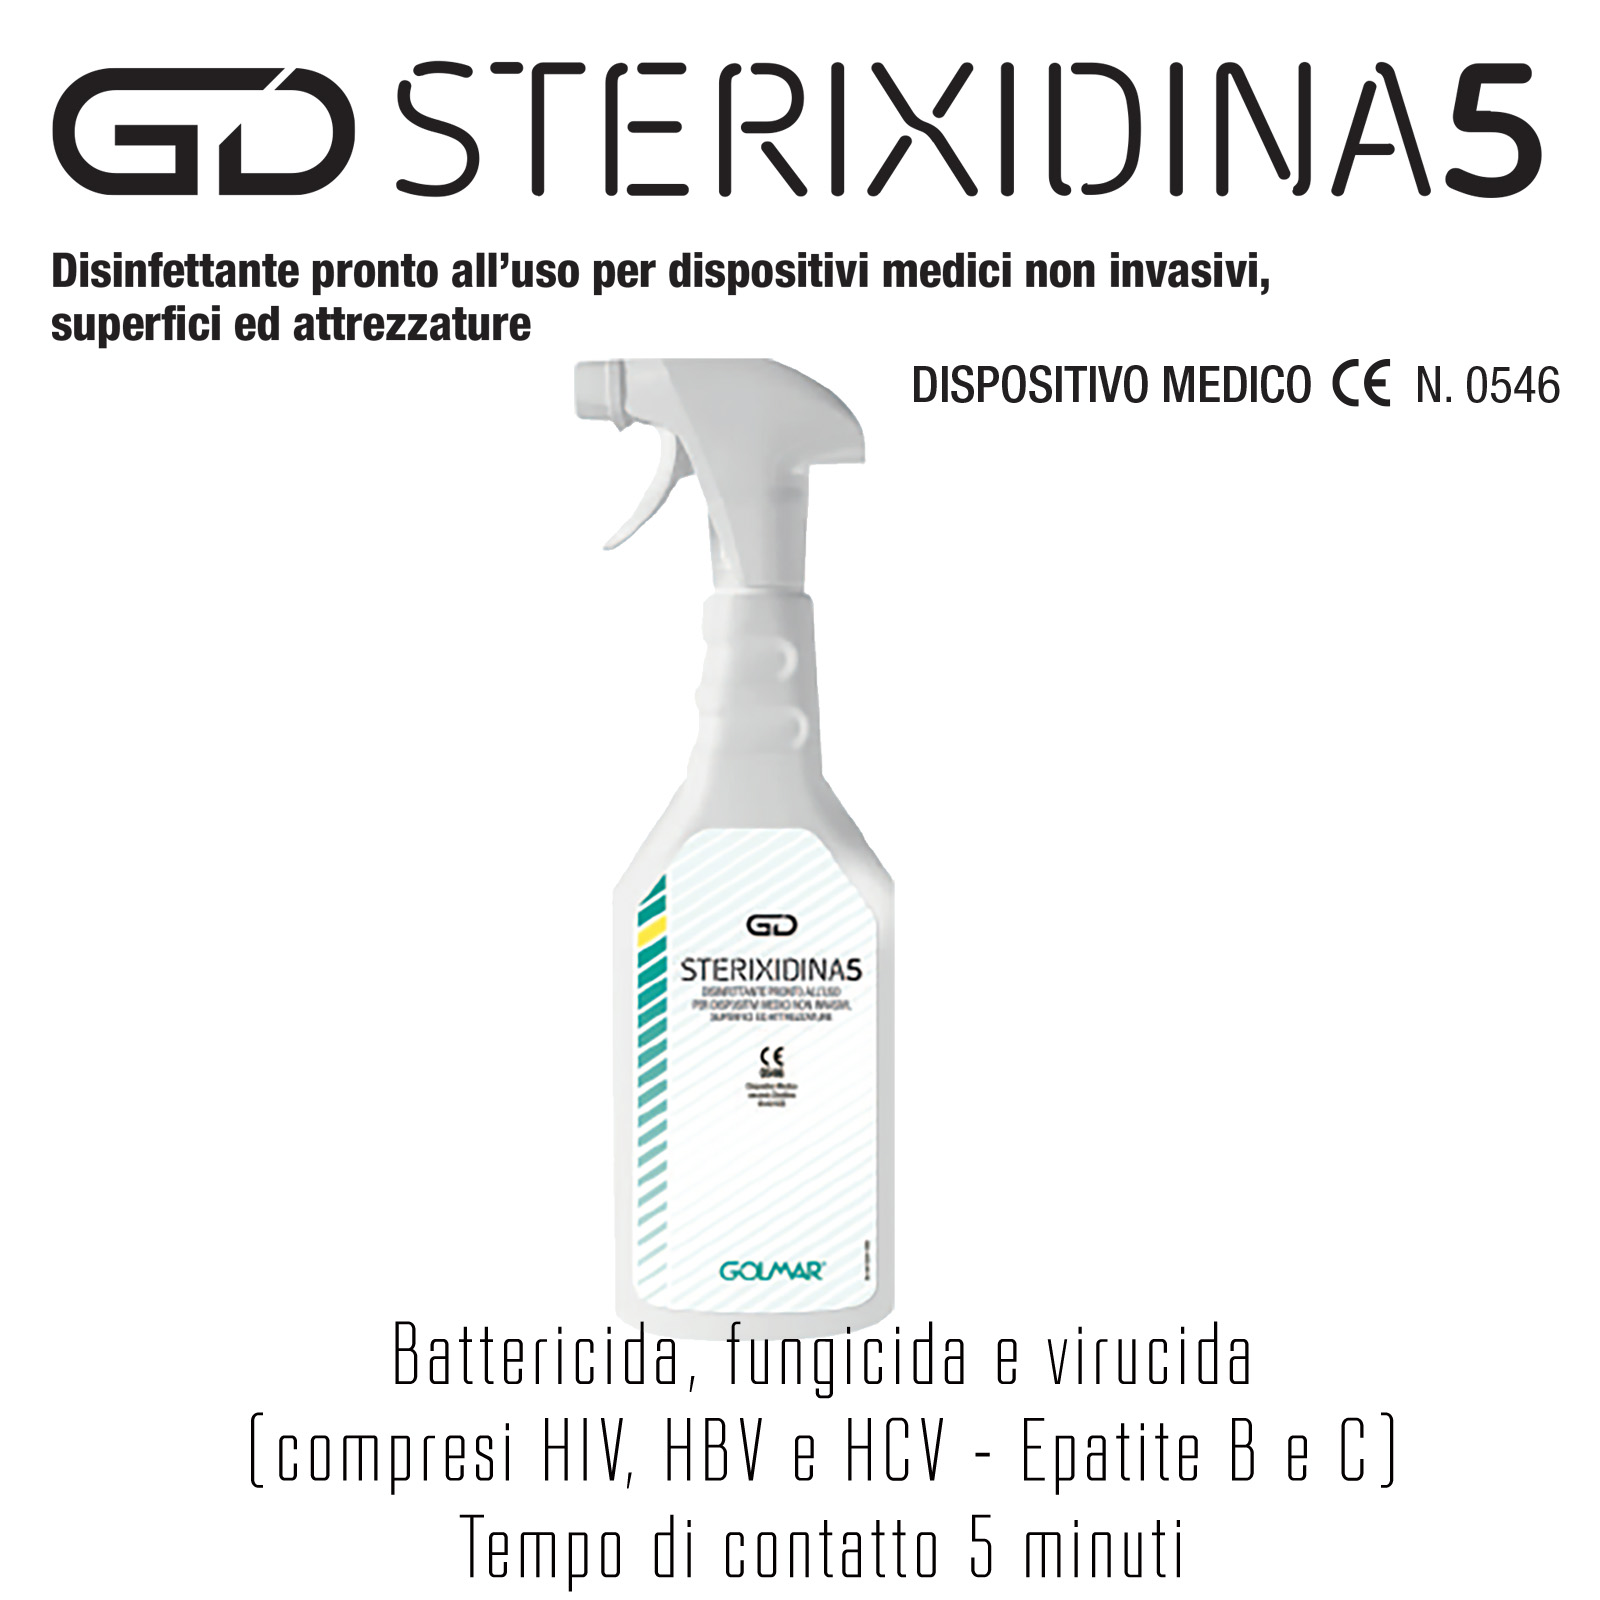 GOLMAR GD STERIXIDINA 5 disinfettante PMC pronto all’uso per dispositivi medici non invasivi, superfici ed attrezzature - 750 ml